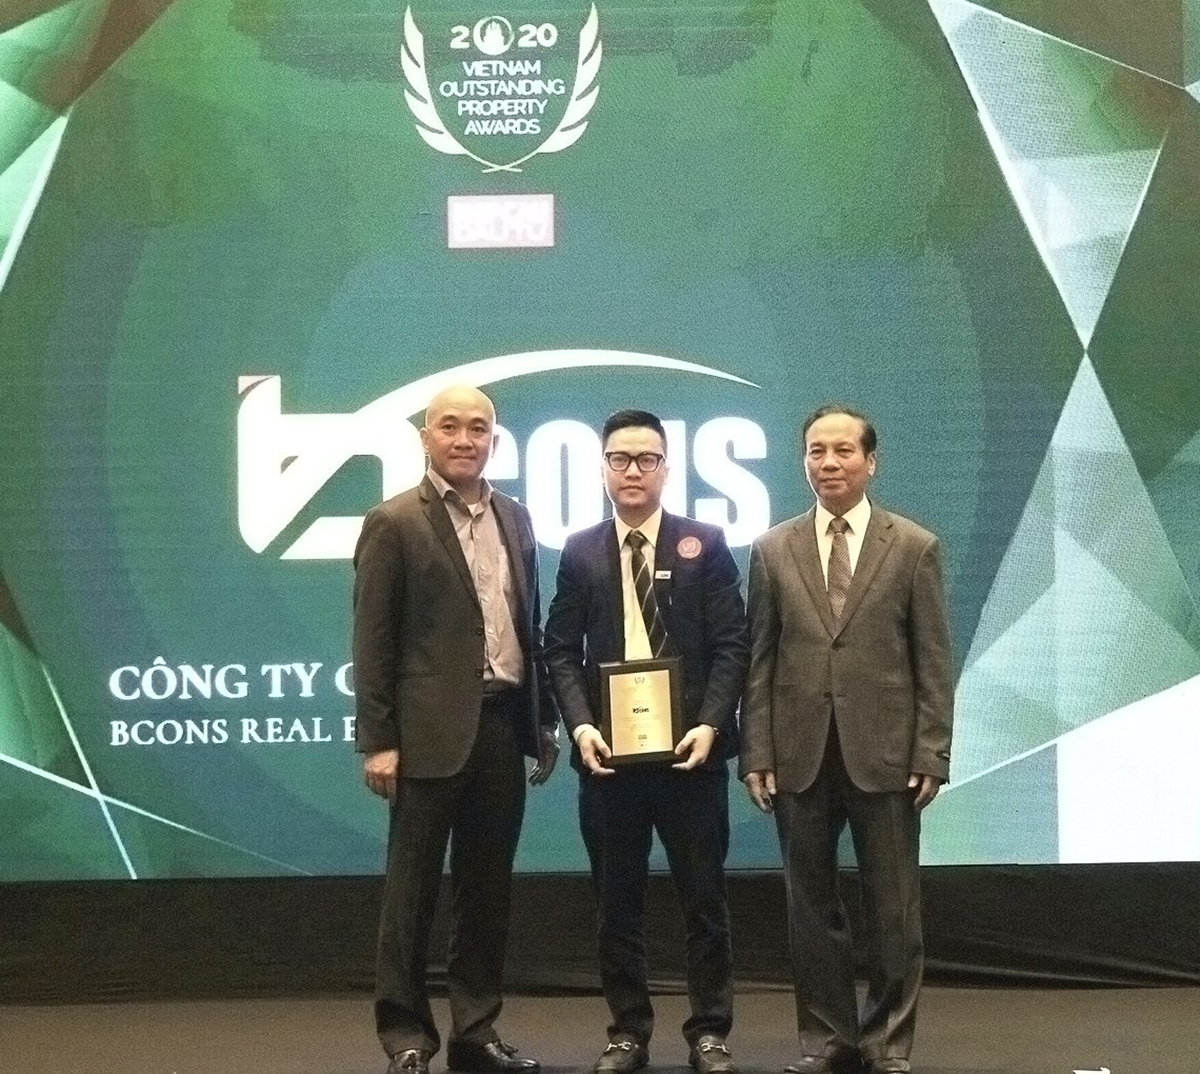 Ông Đỗ Thanh Bình - Phó chủ tịch HĐQT Tập đoàn Bcons nhận giải Nhà phát triển Khu đô thị tiêu biểu